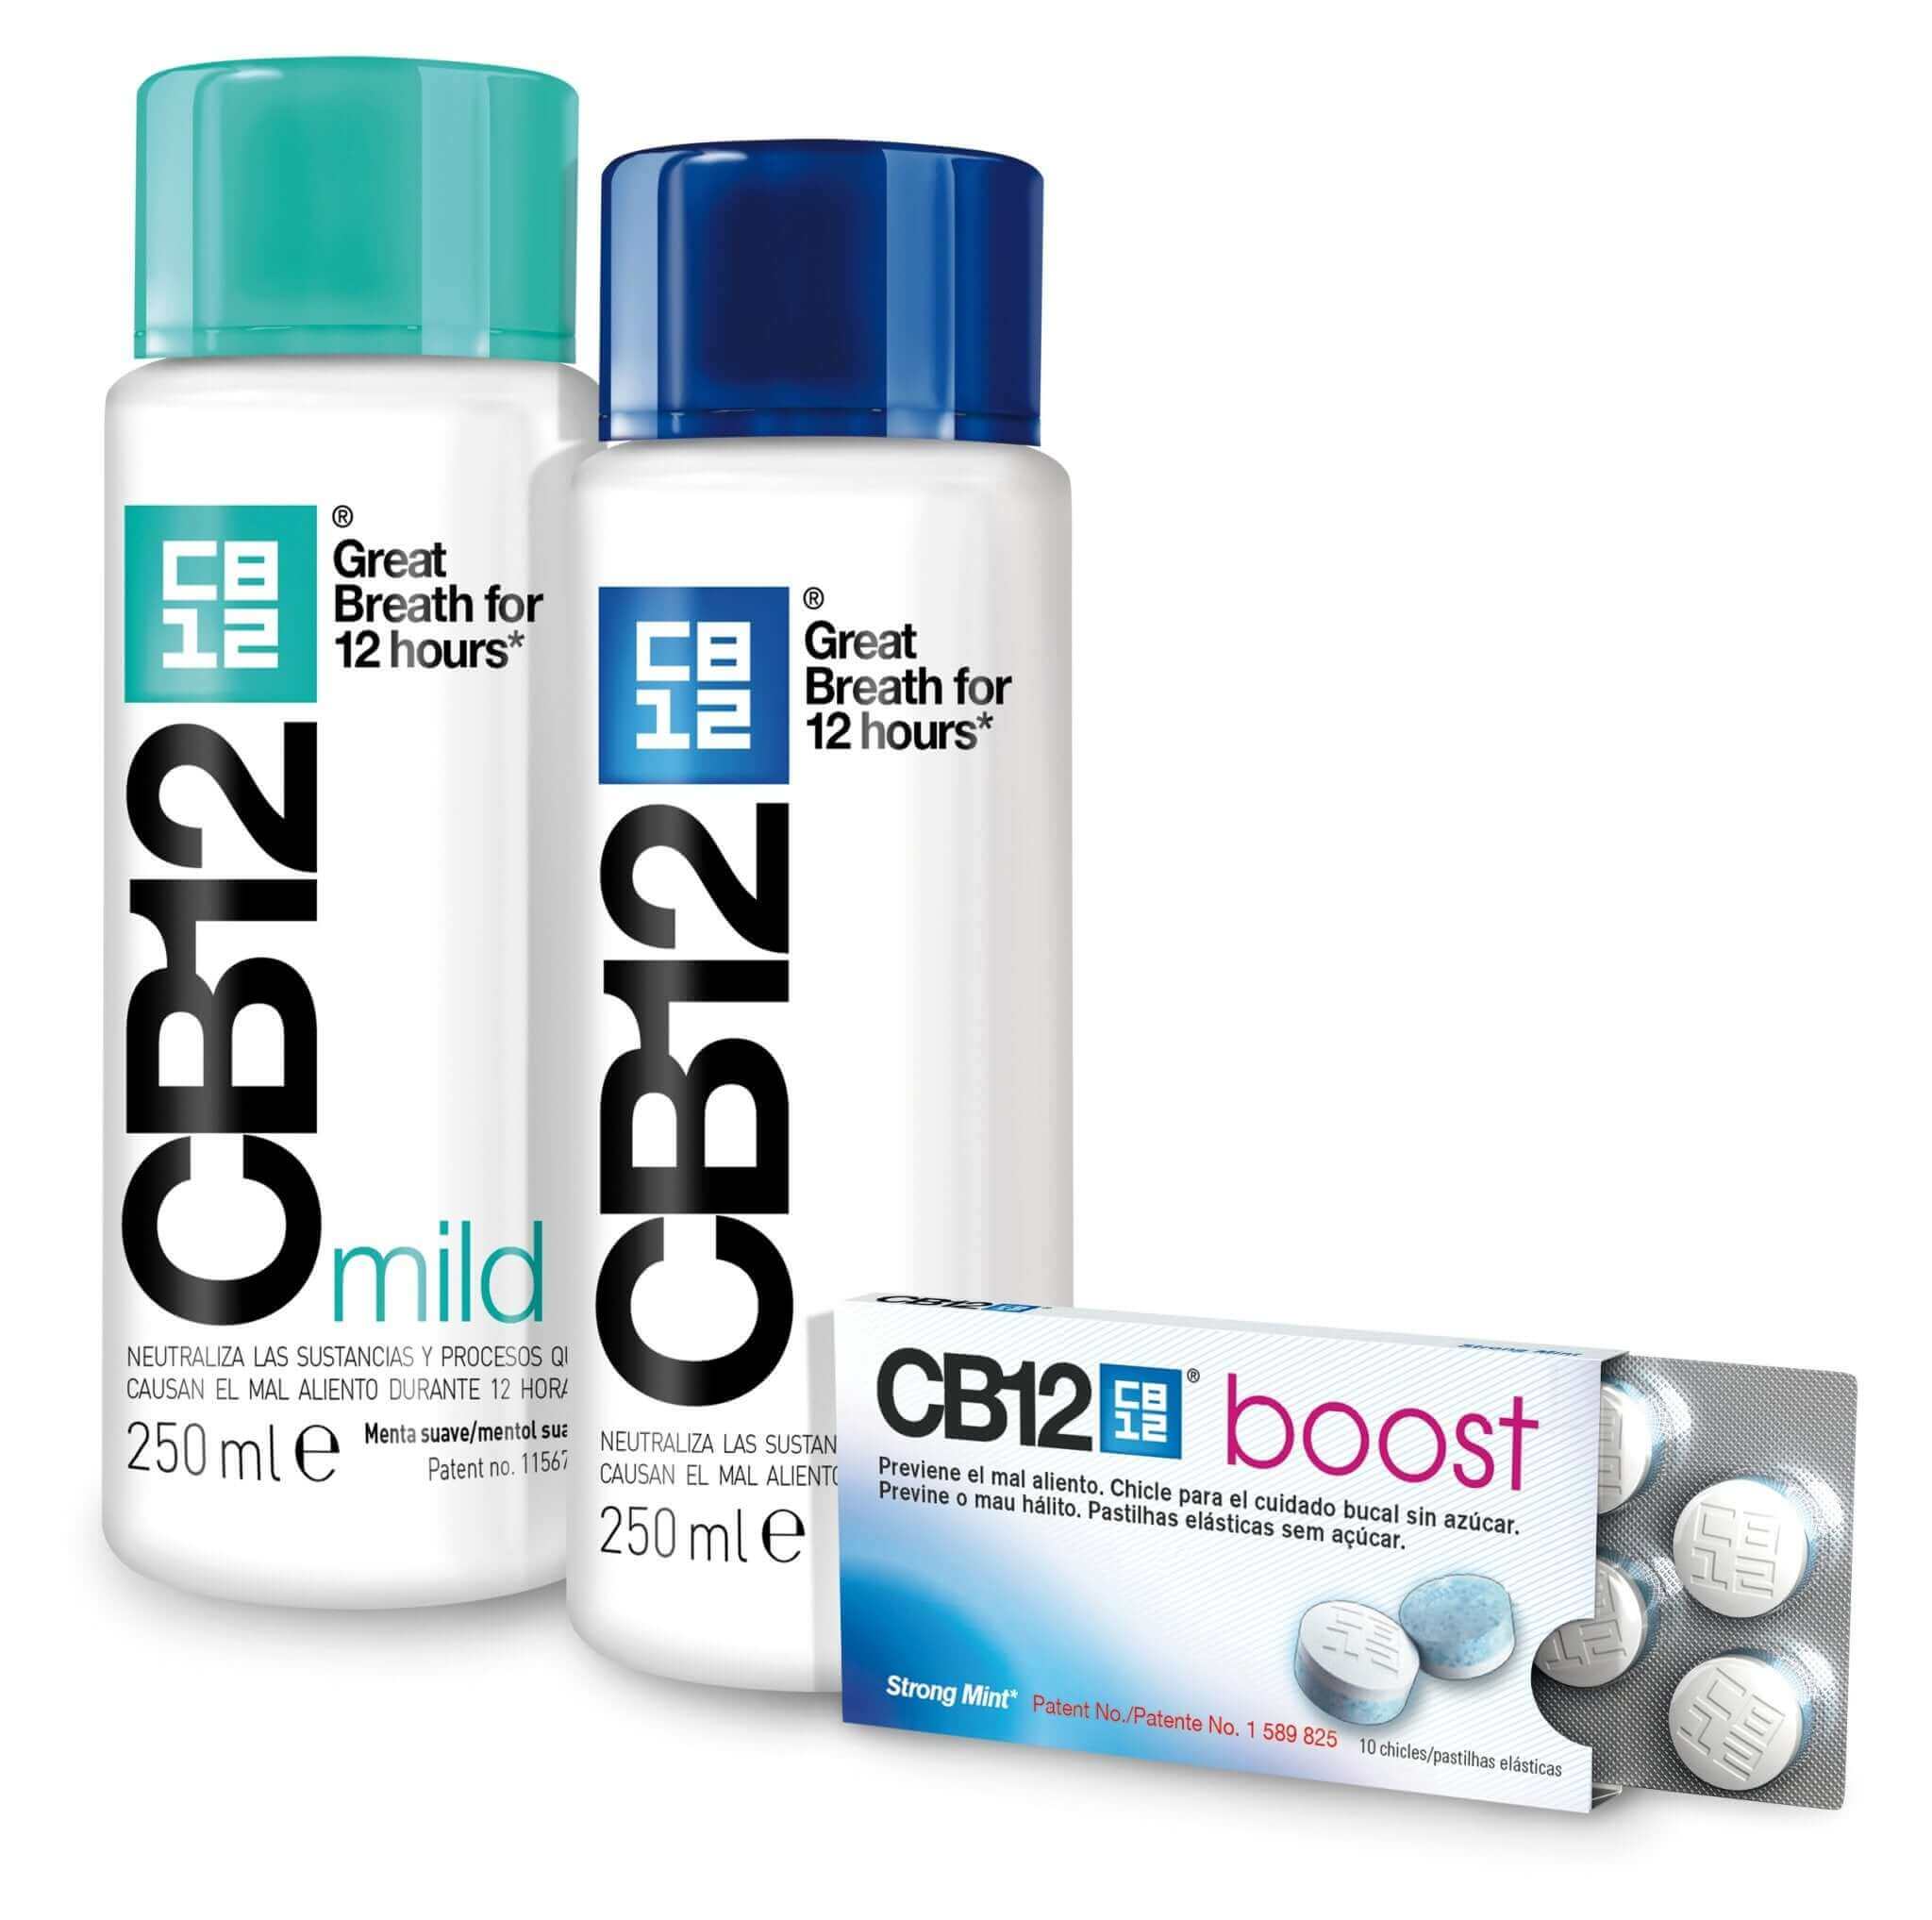 Produkty CB12